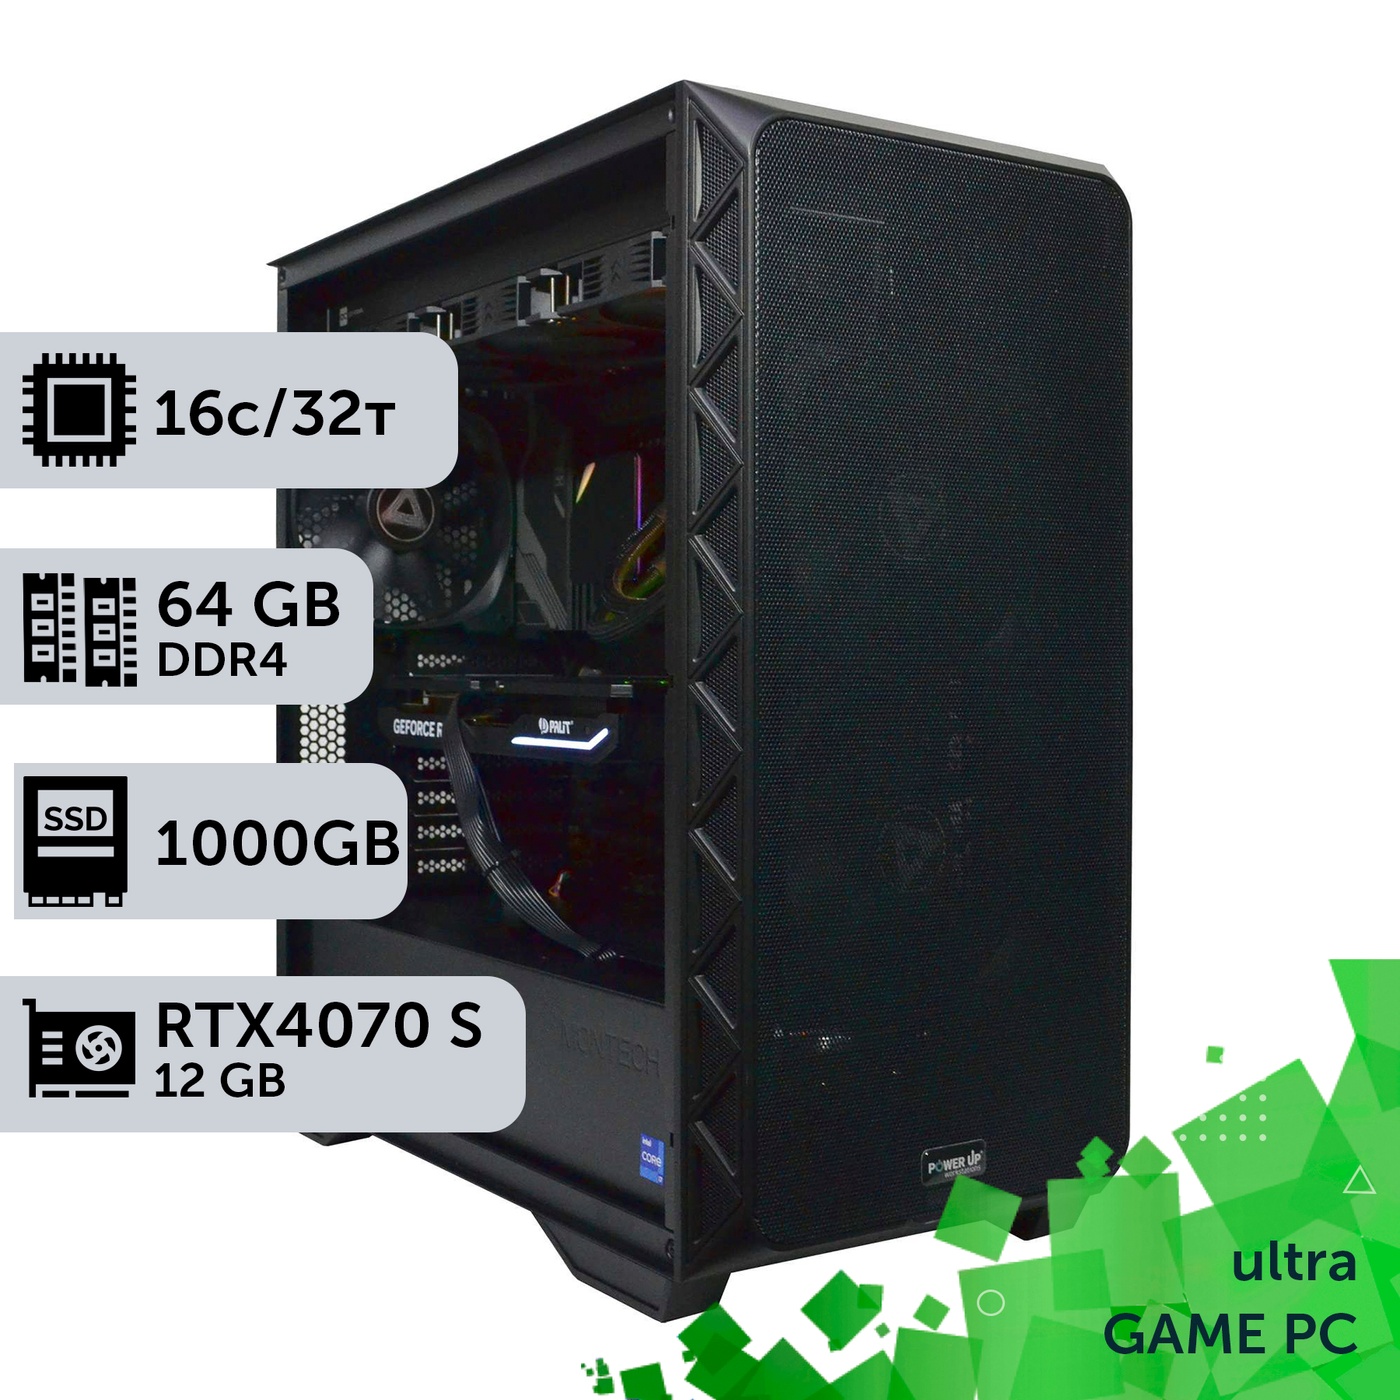 Ігровий комп'ютер GamePC Ultra #371 Ryzen 9 5950x/64 GB/SSD 1TB/GeForce RTX 4070 Super 12GB